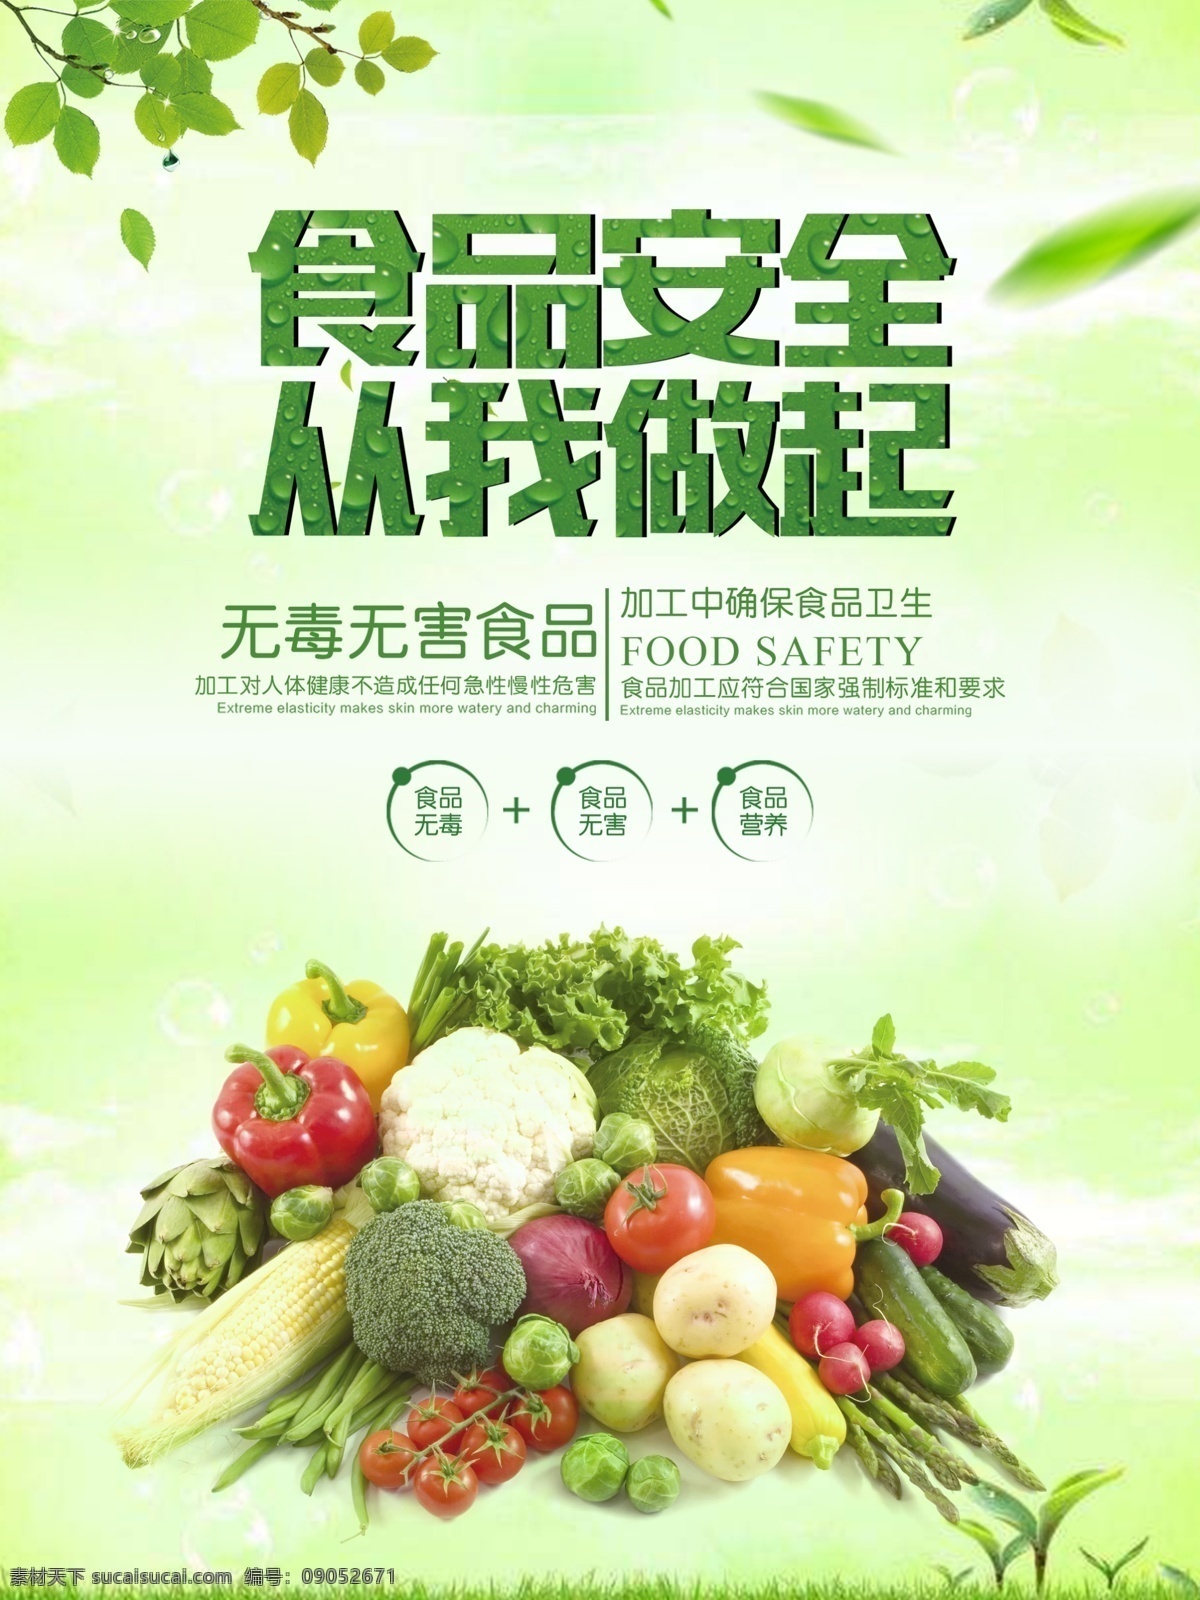 绿色 食品安全 公益 宣传海报 绿色食品 食品安全海报 食品安全宣传 海报 食品安全素材 食品安全背景 公益海报素材 食品公益海报